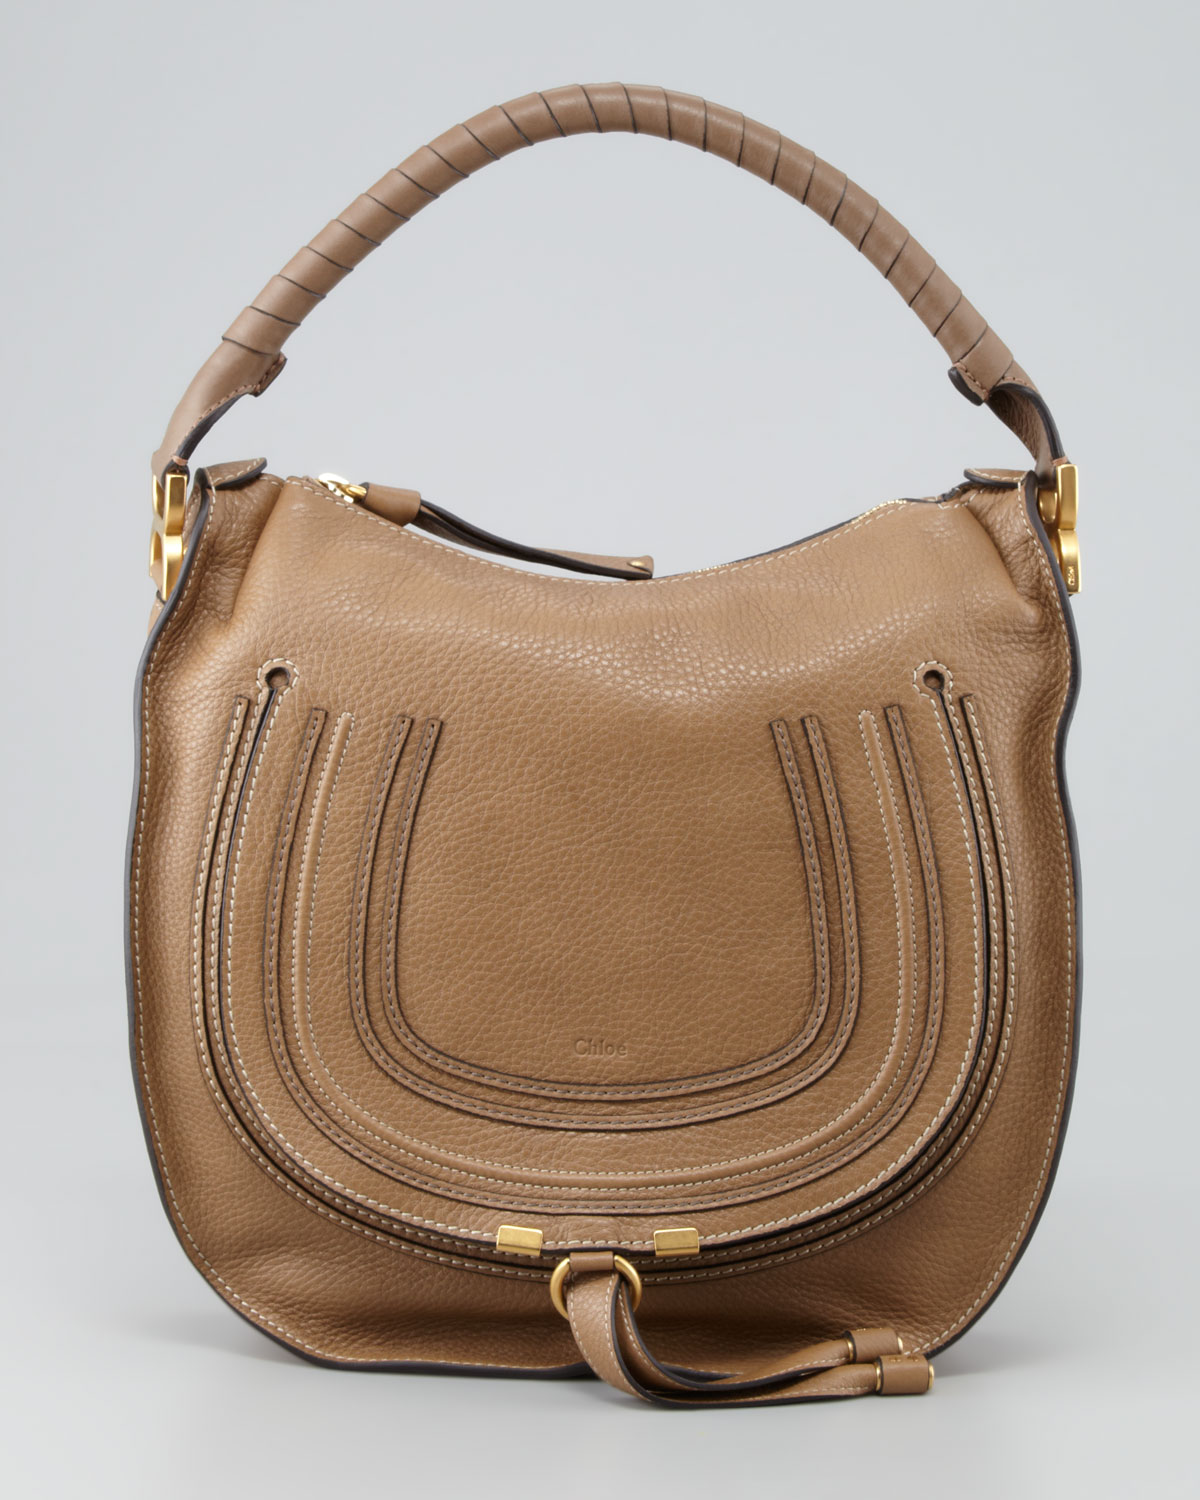 Lyst - Chloé Marcie Medium Hobo Bag in Brown